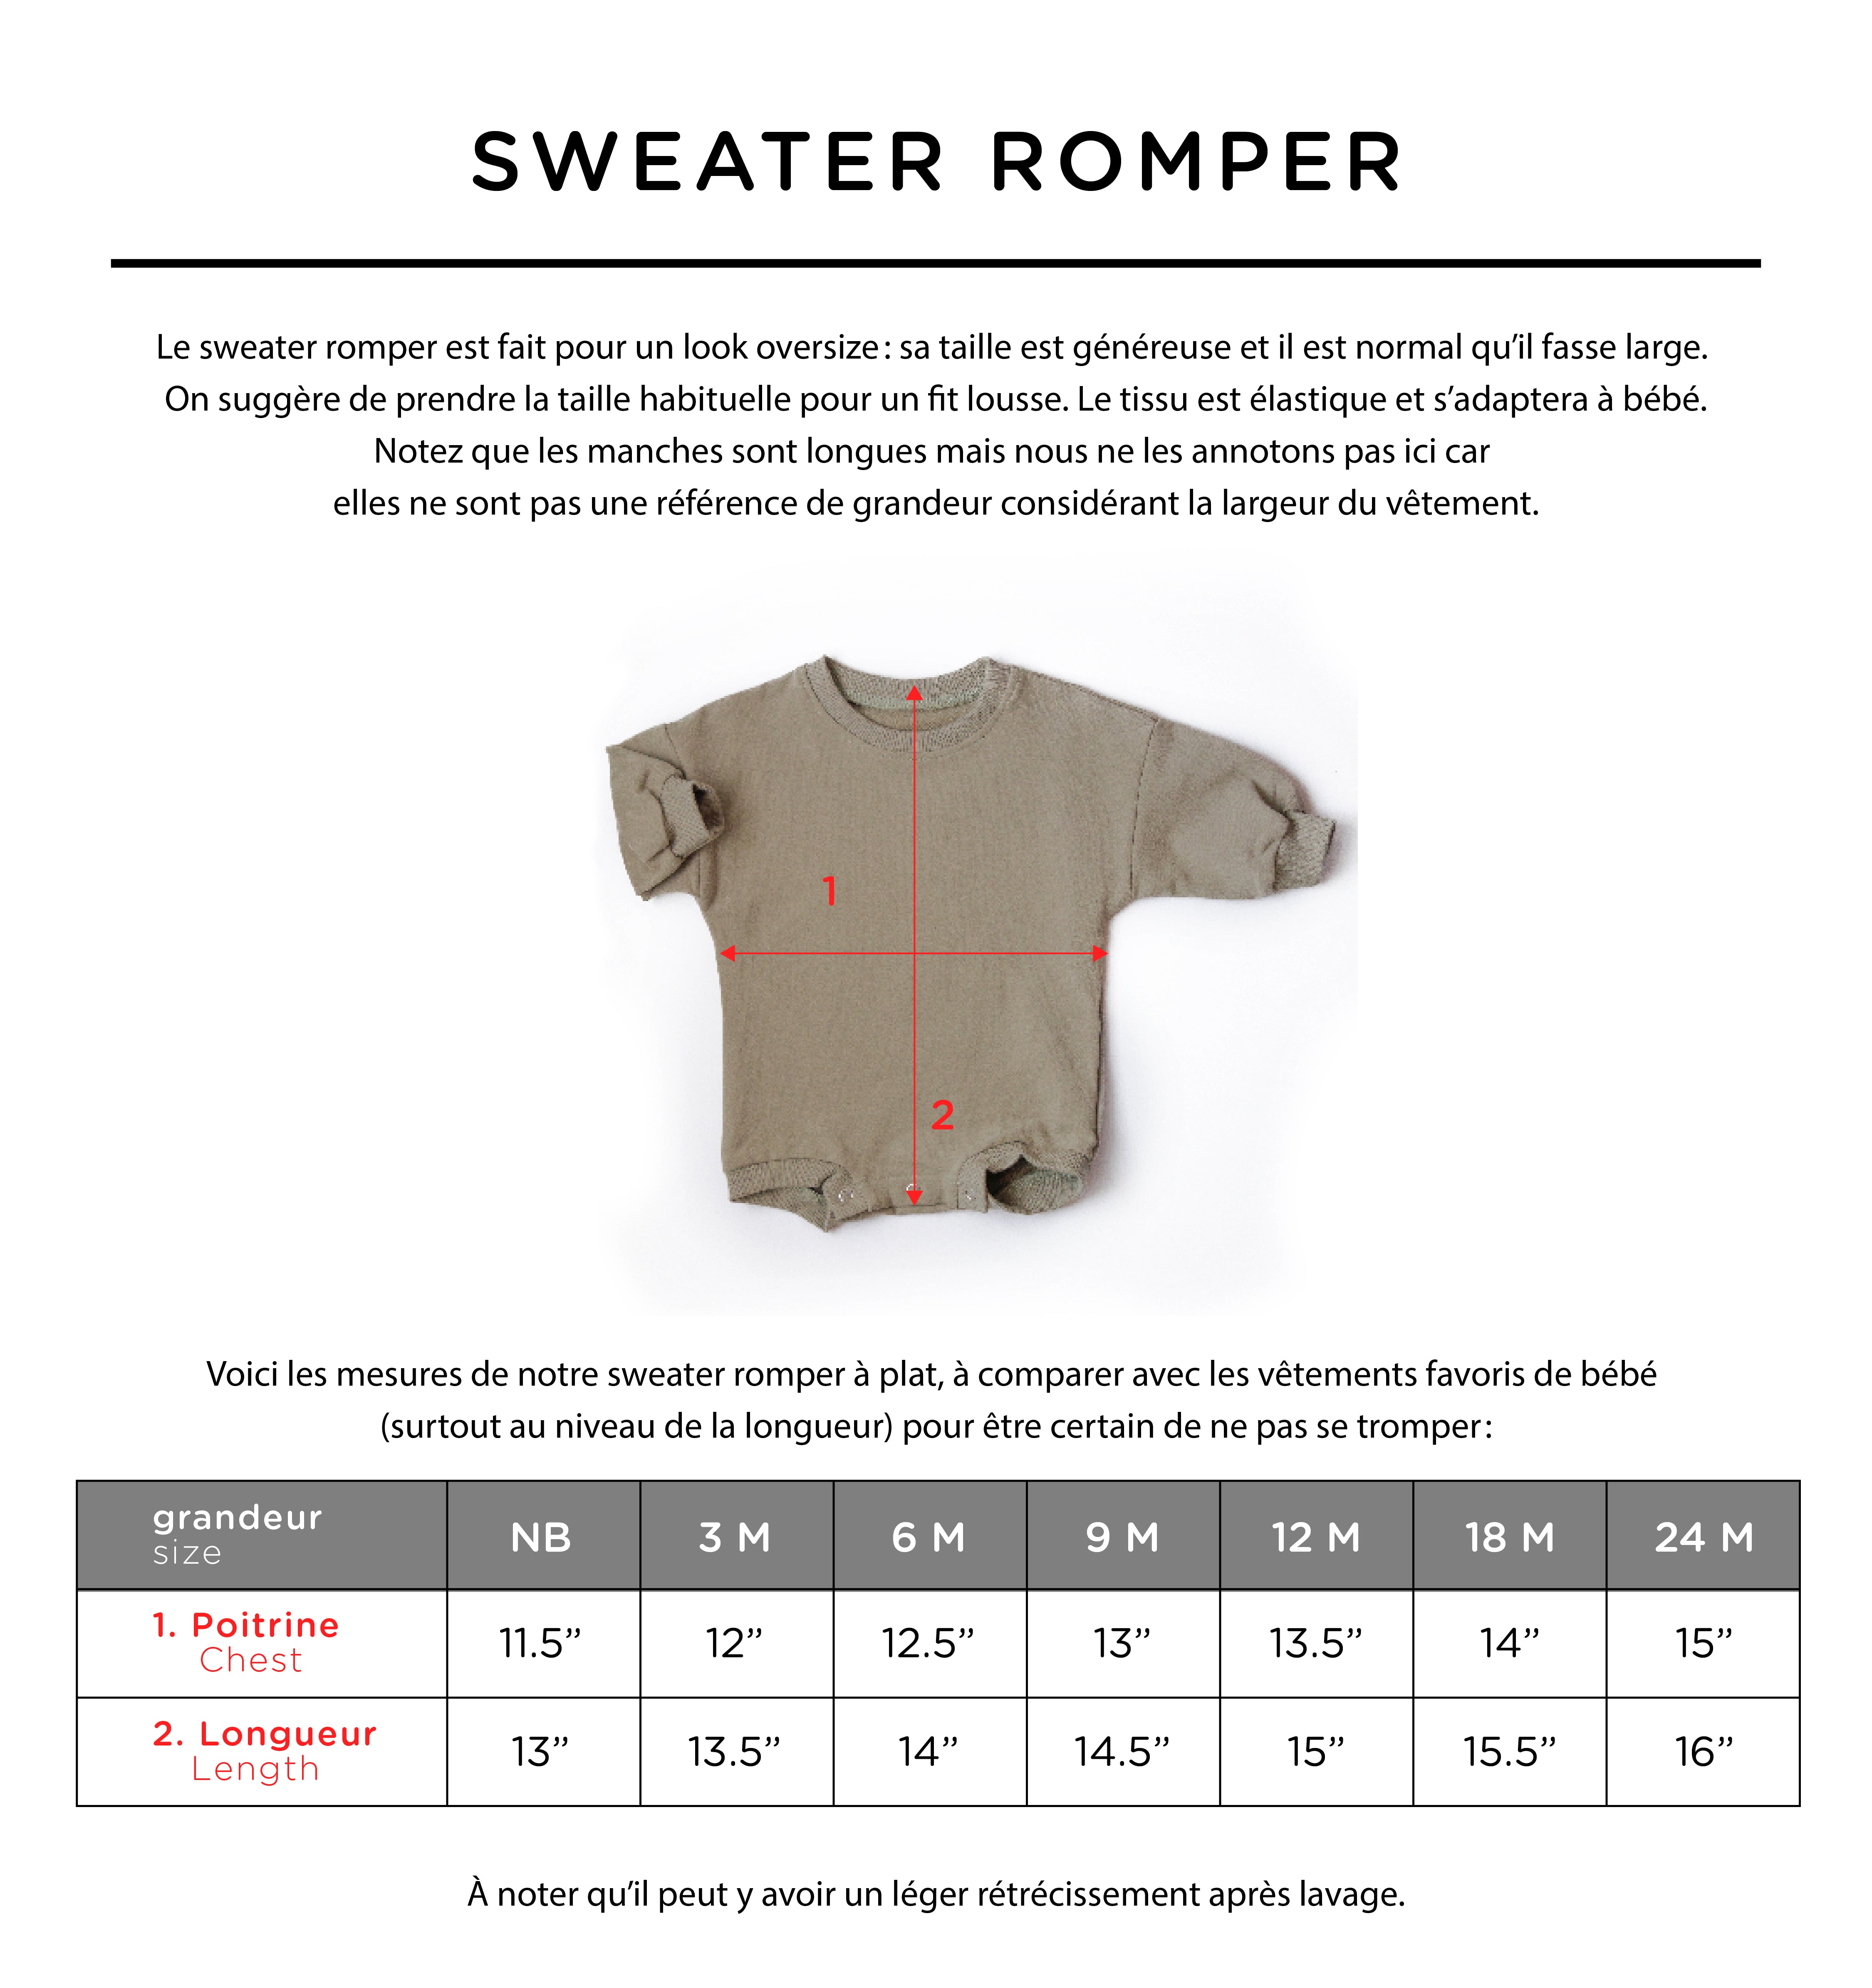 Sweater Romper personnalisé "PETIT(E)" + mot à personnaliser